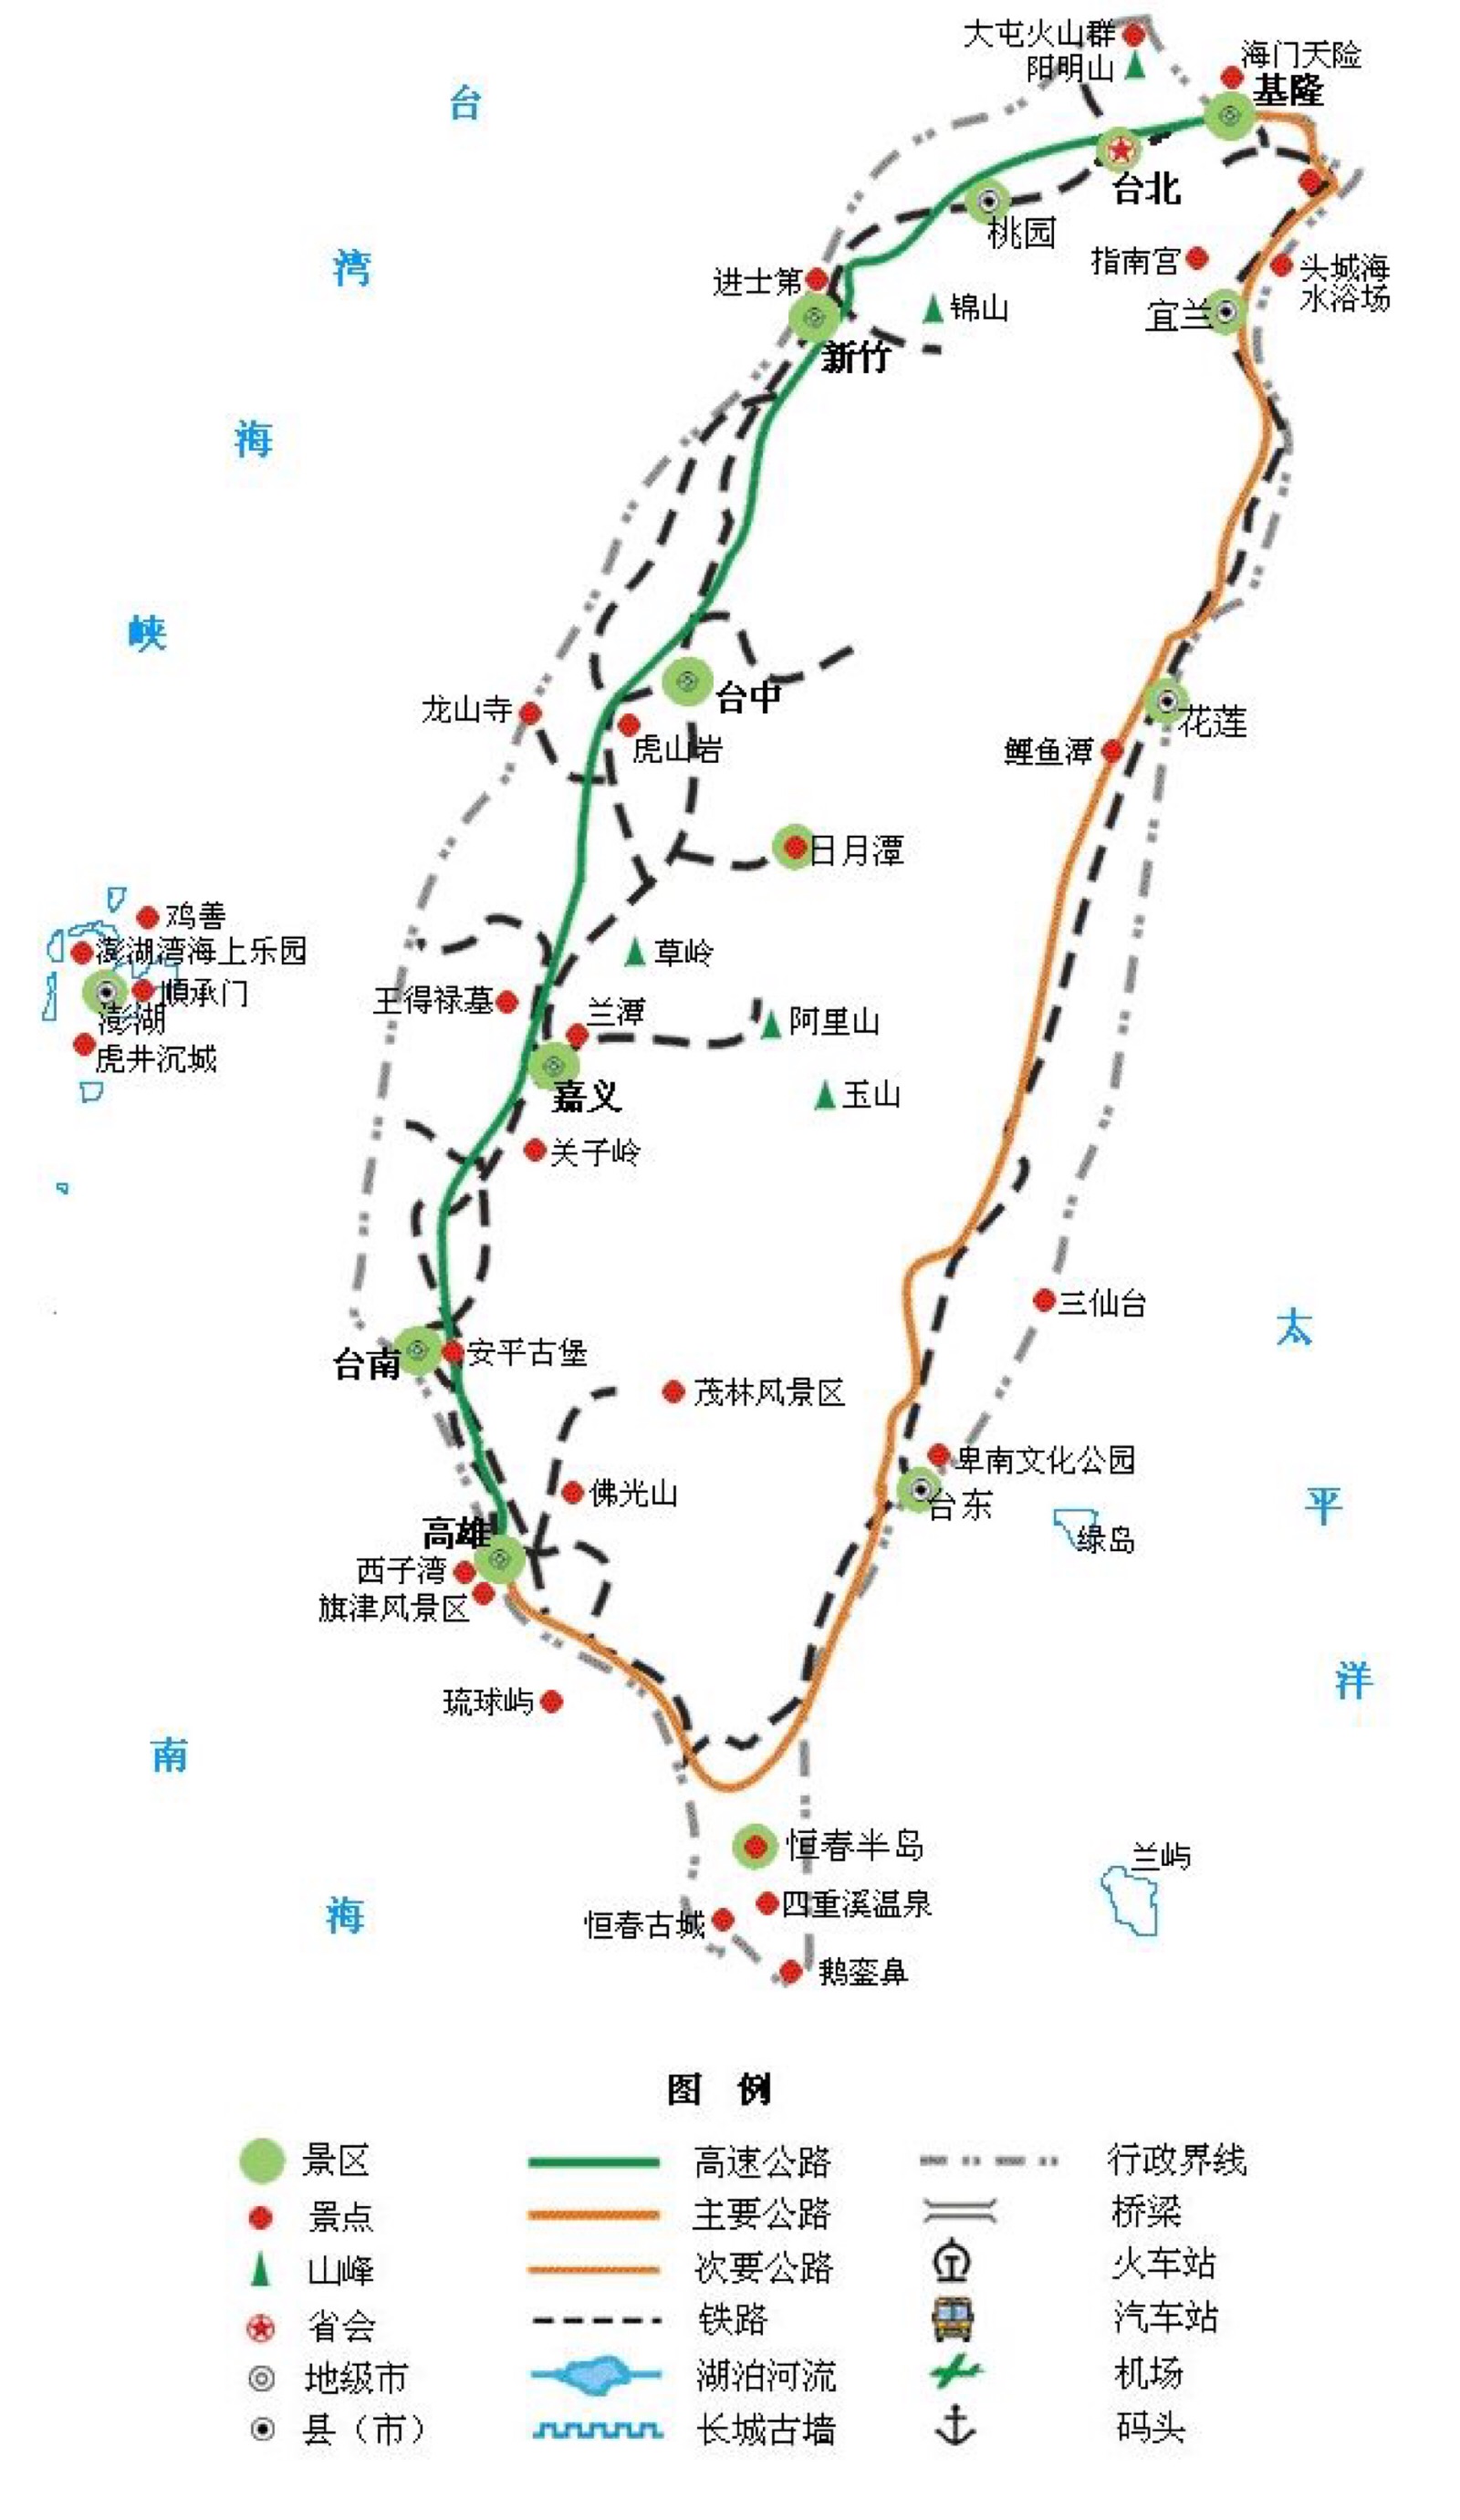 我会不会有勇气去台湾骑行环岛?